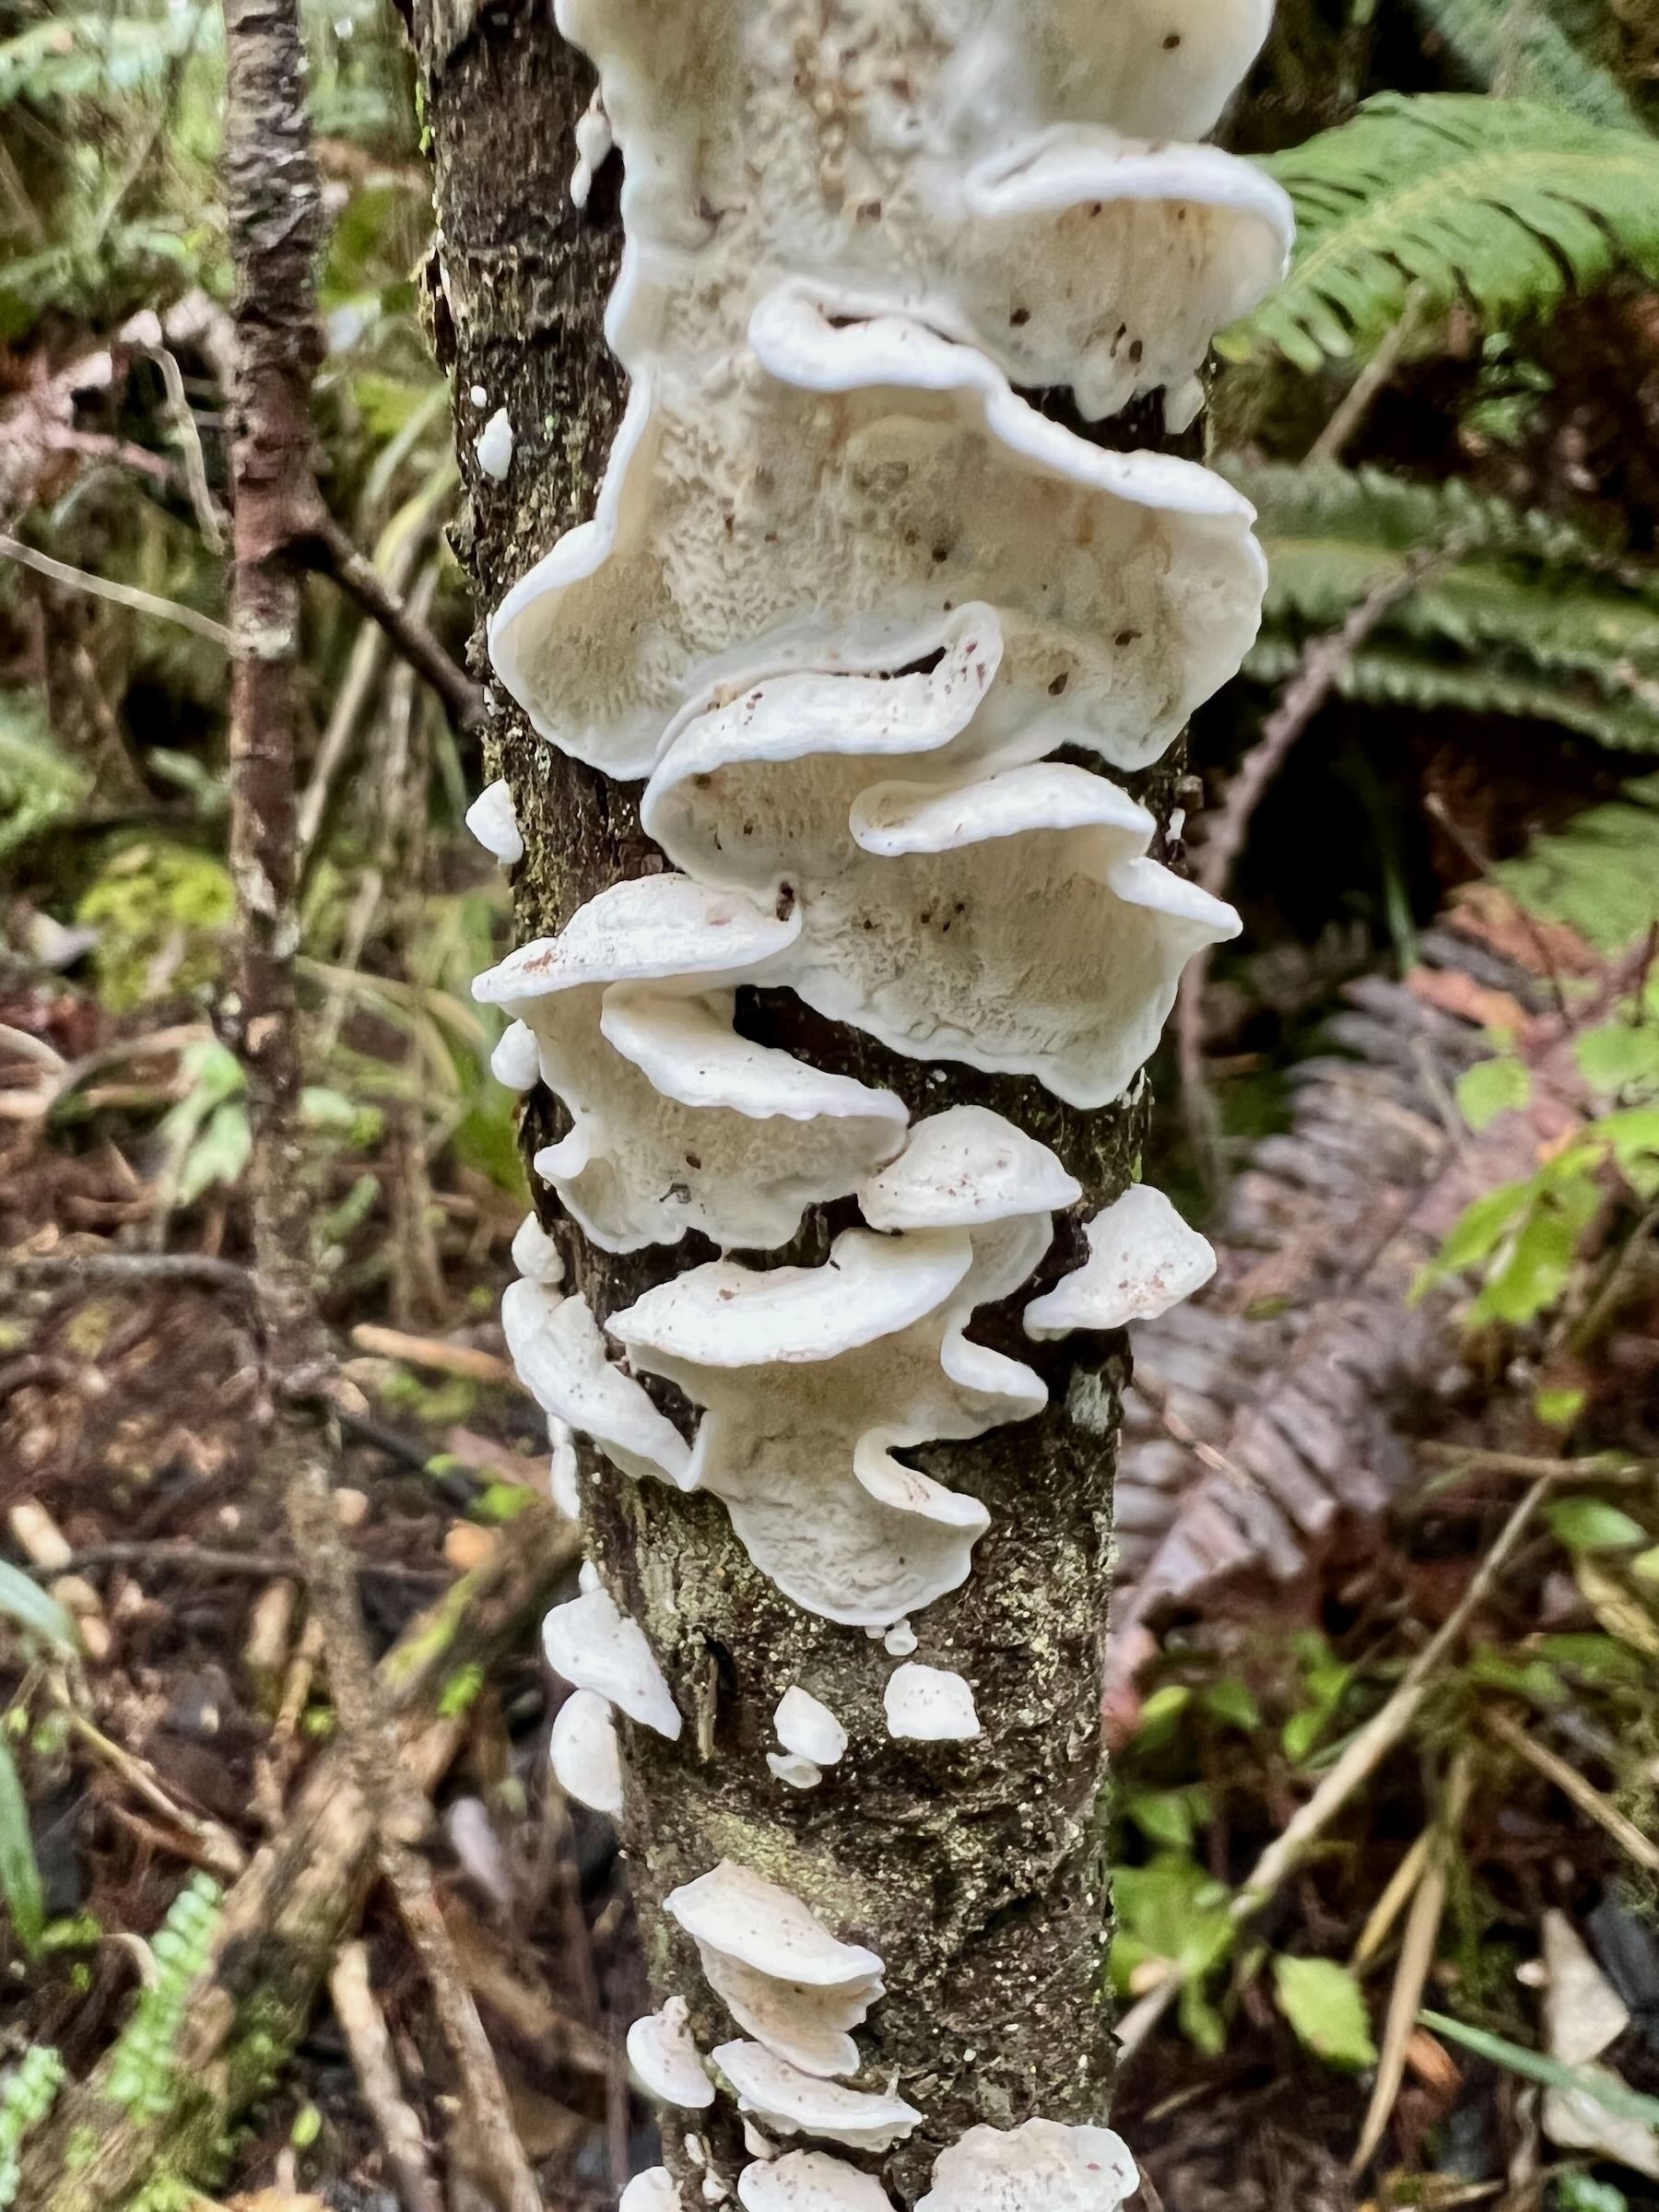 White fungi on a tree trunk. 